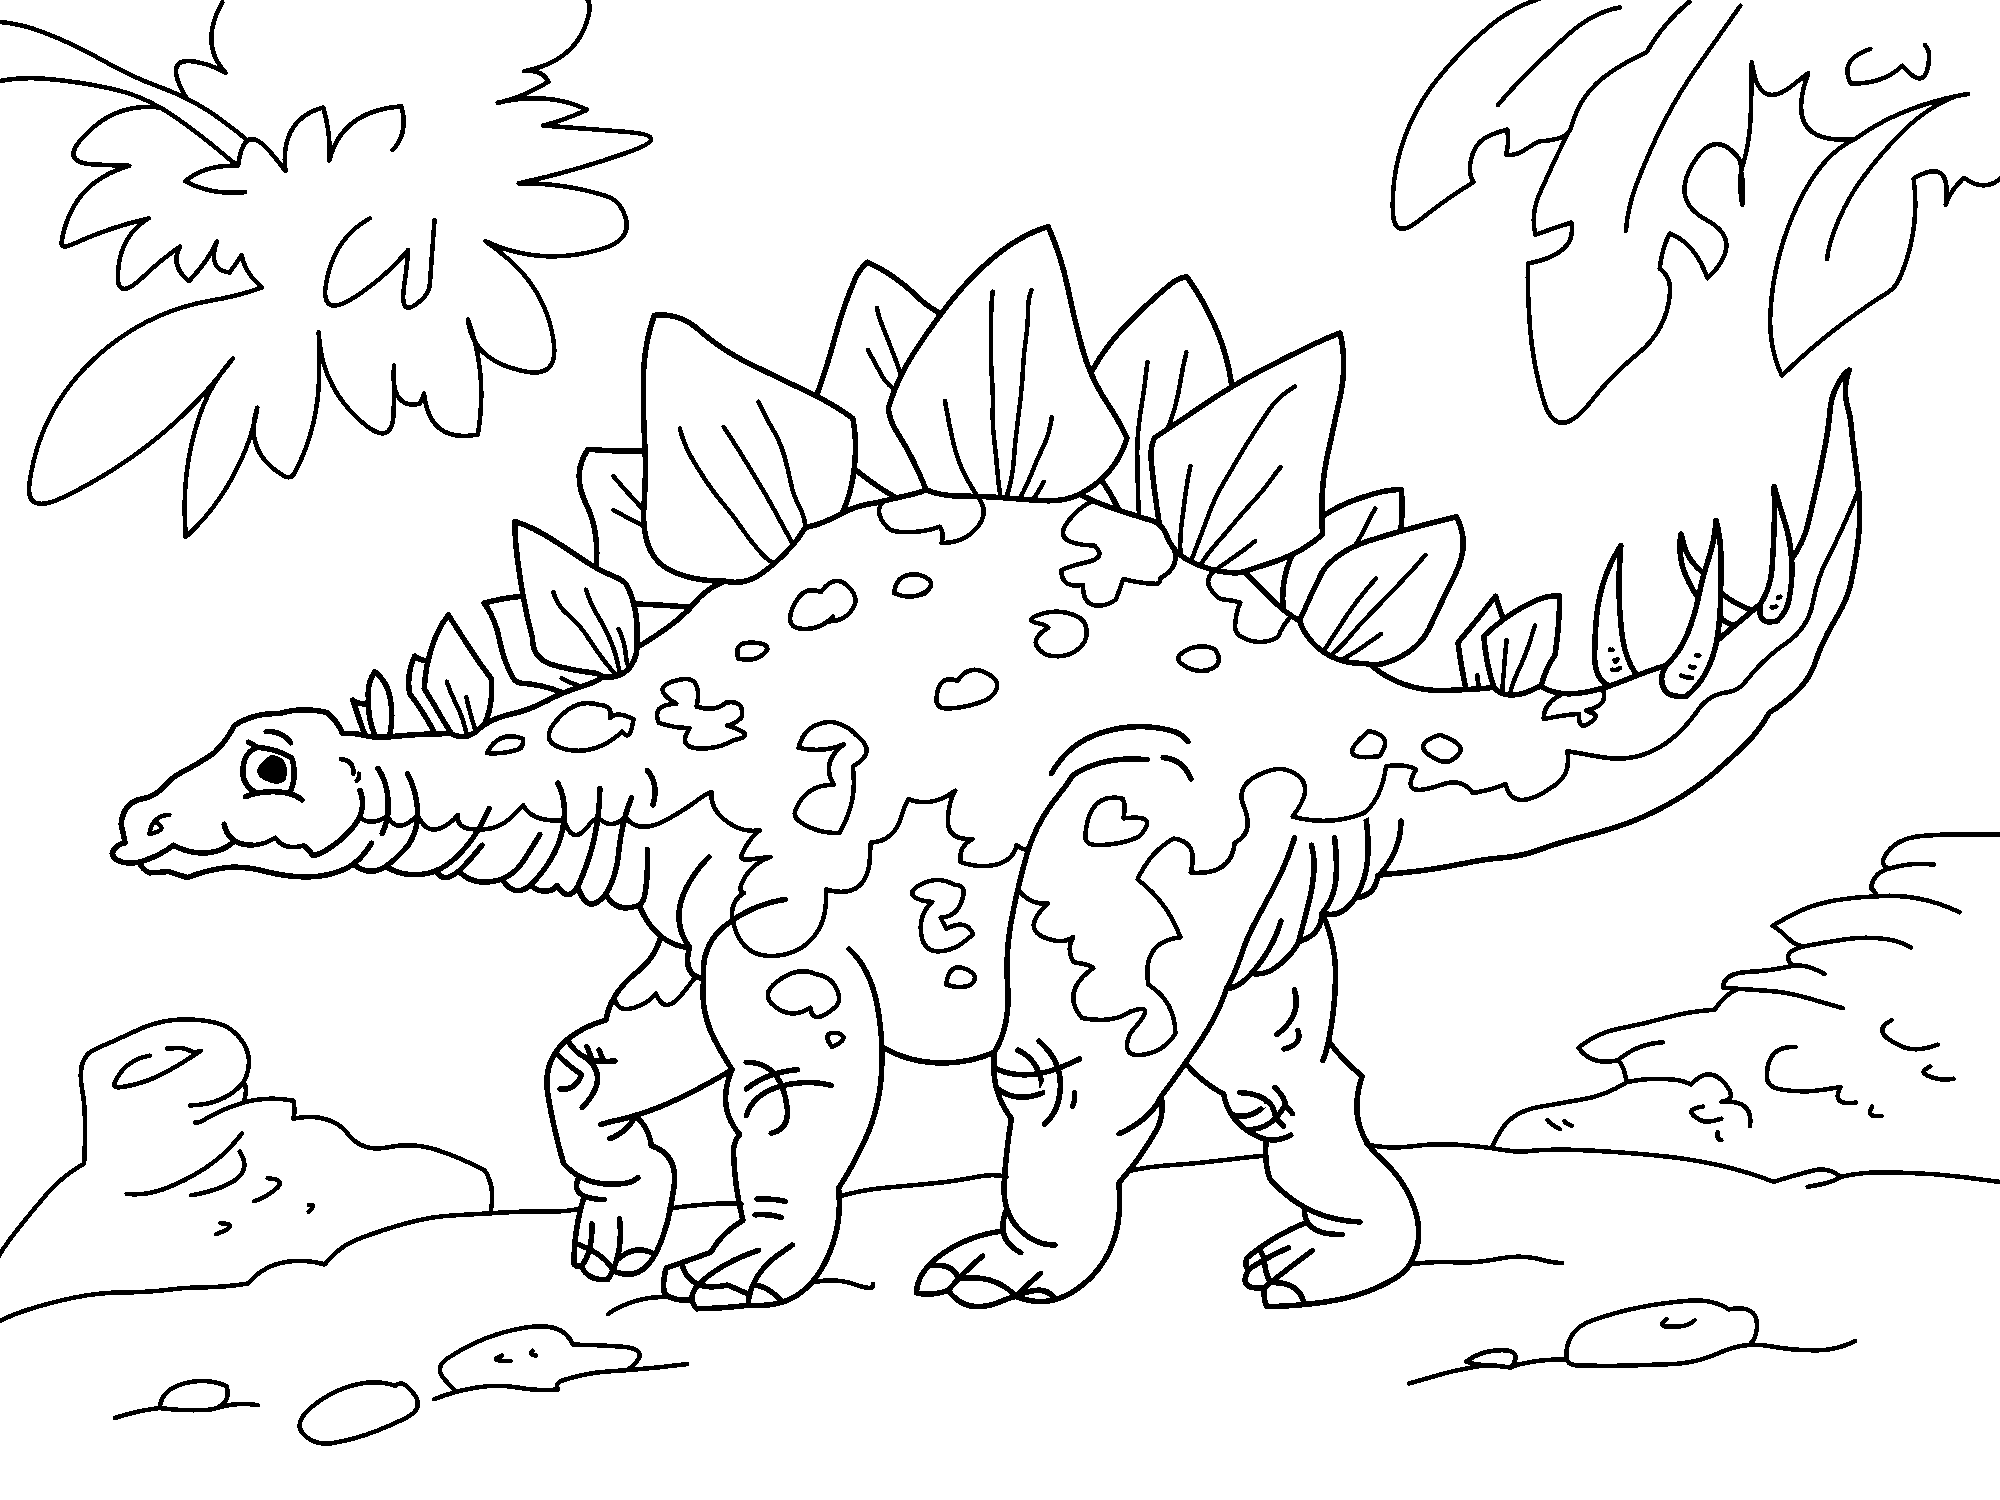 Раскраски динозавры распечатать